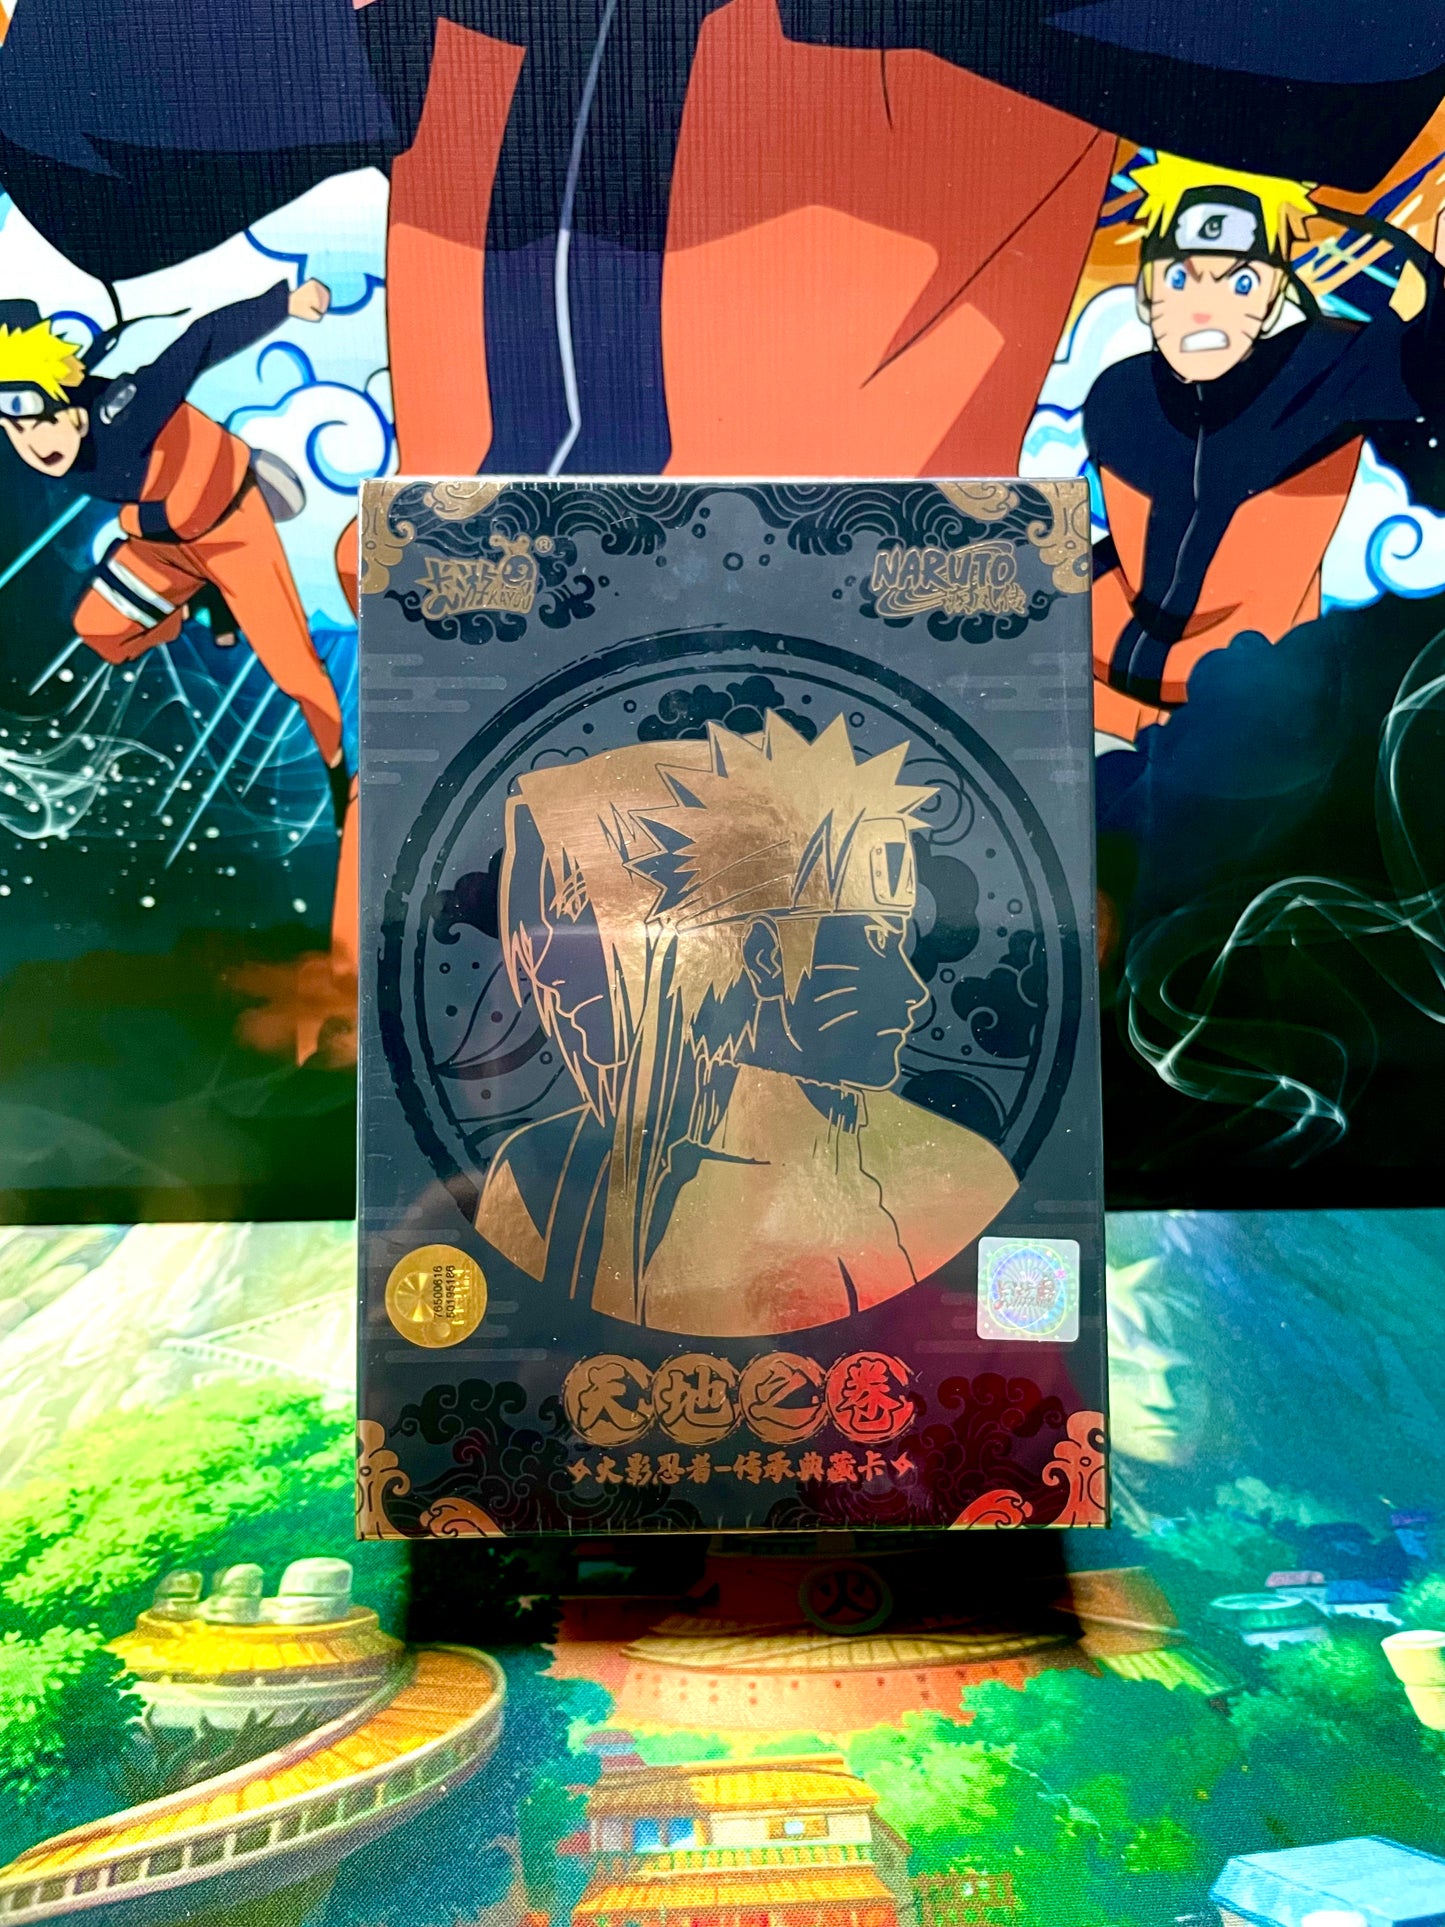 Kayou Naruto Card Original Gift Box Serial